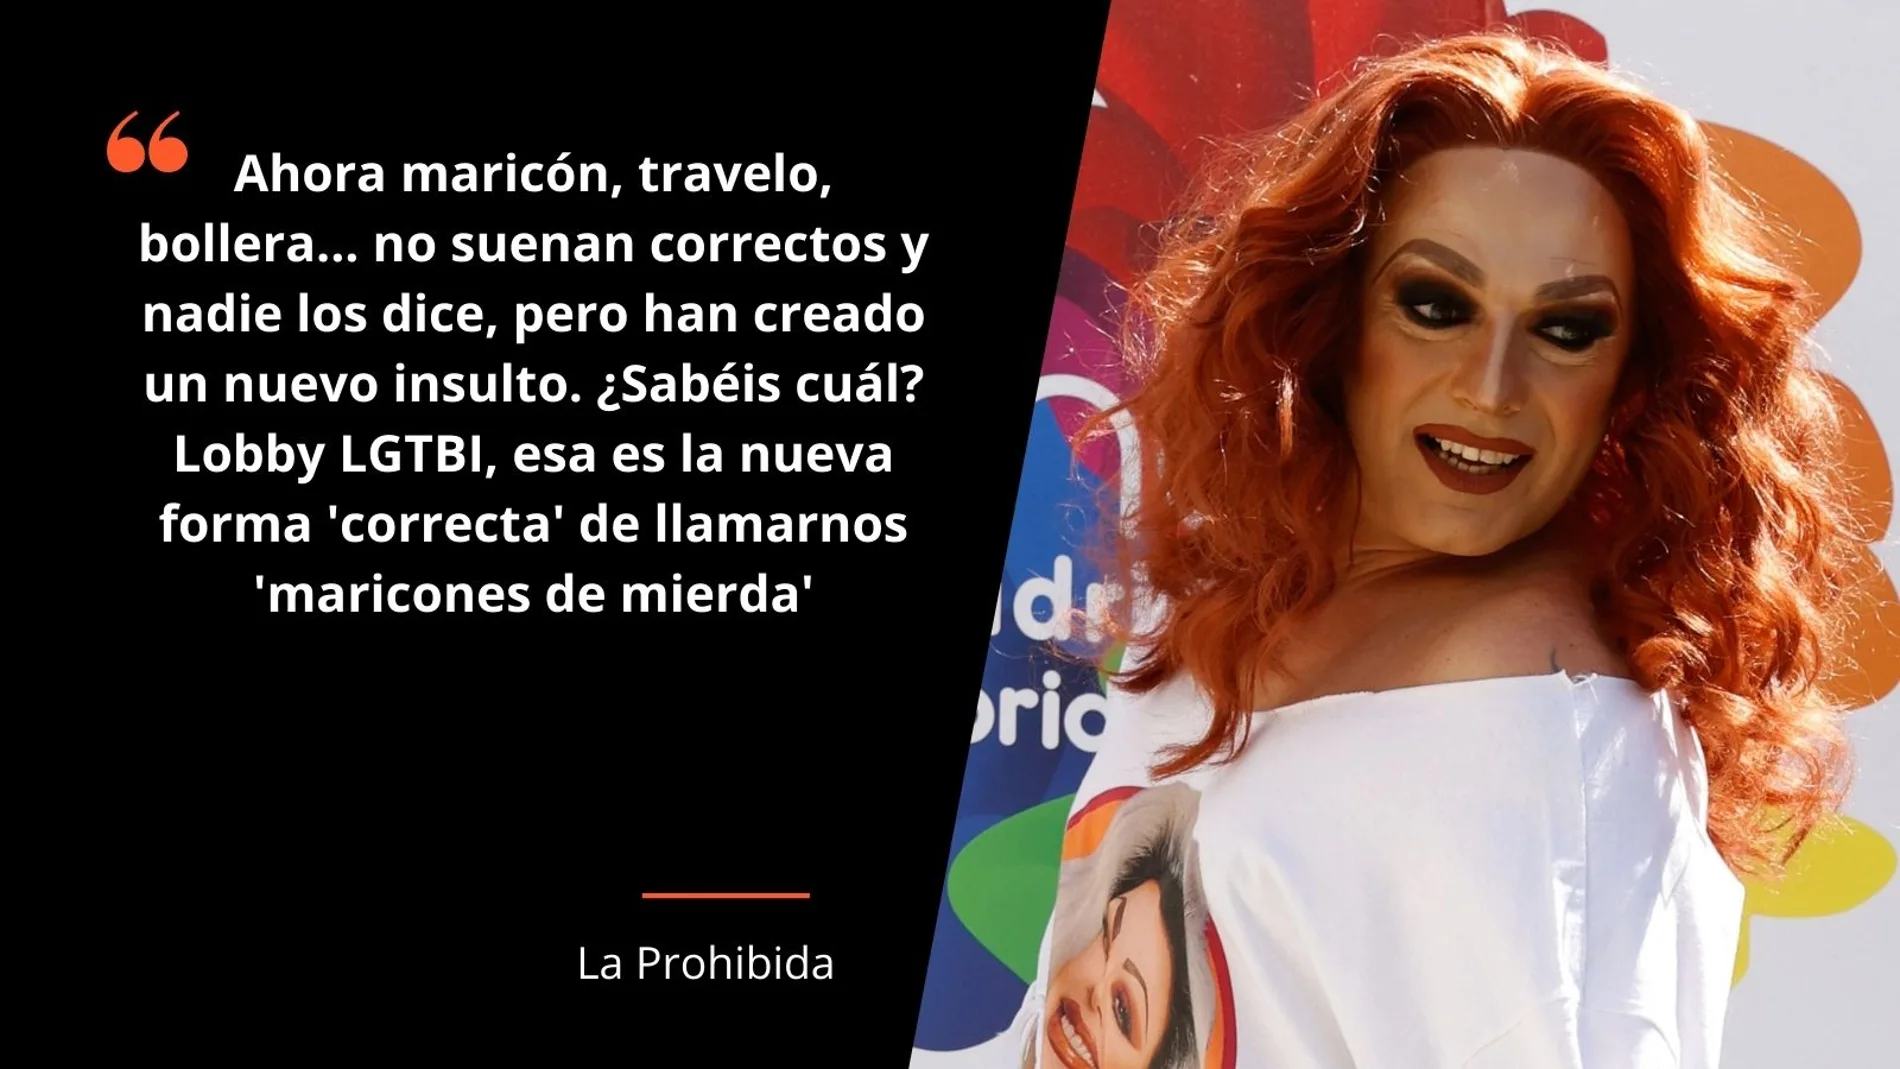 El pregón del Orgullo 2021 rinde homenaje al mundo Drag en España